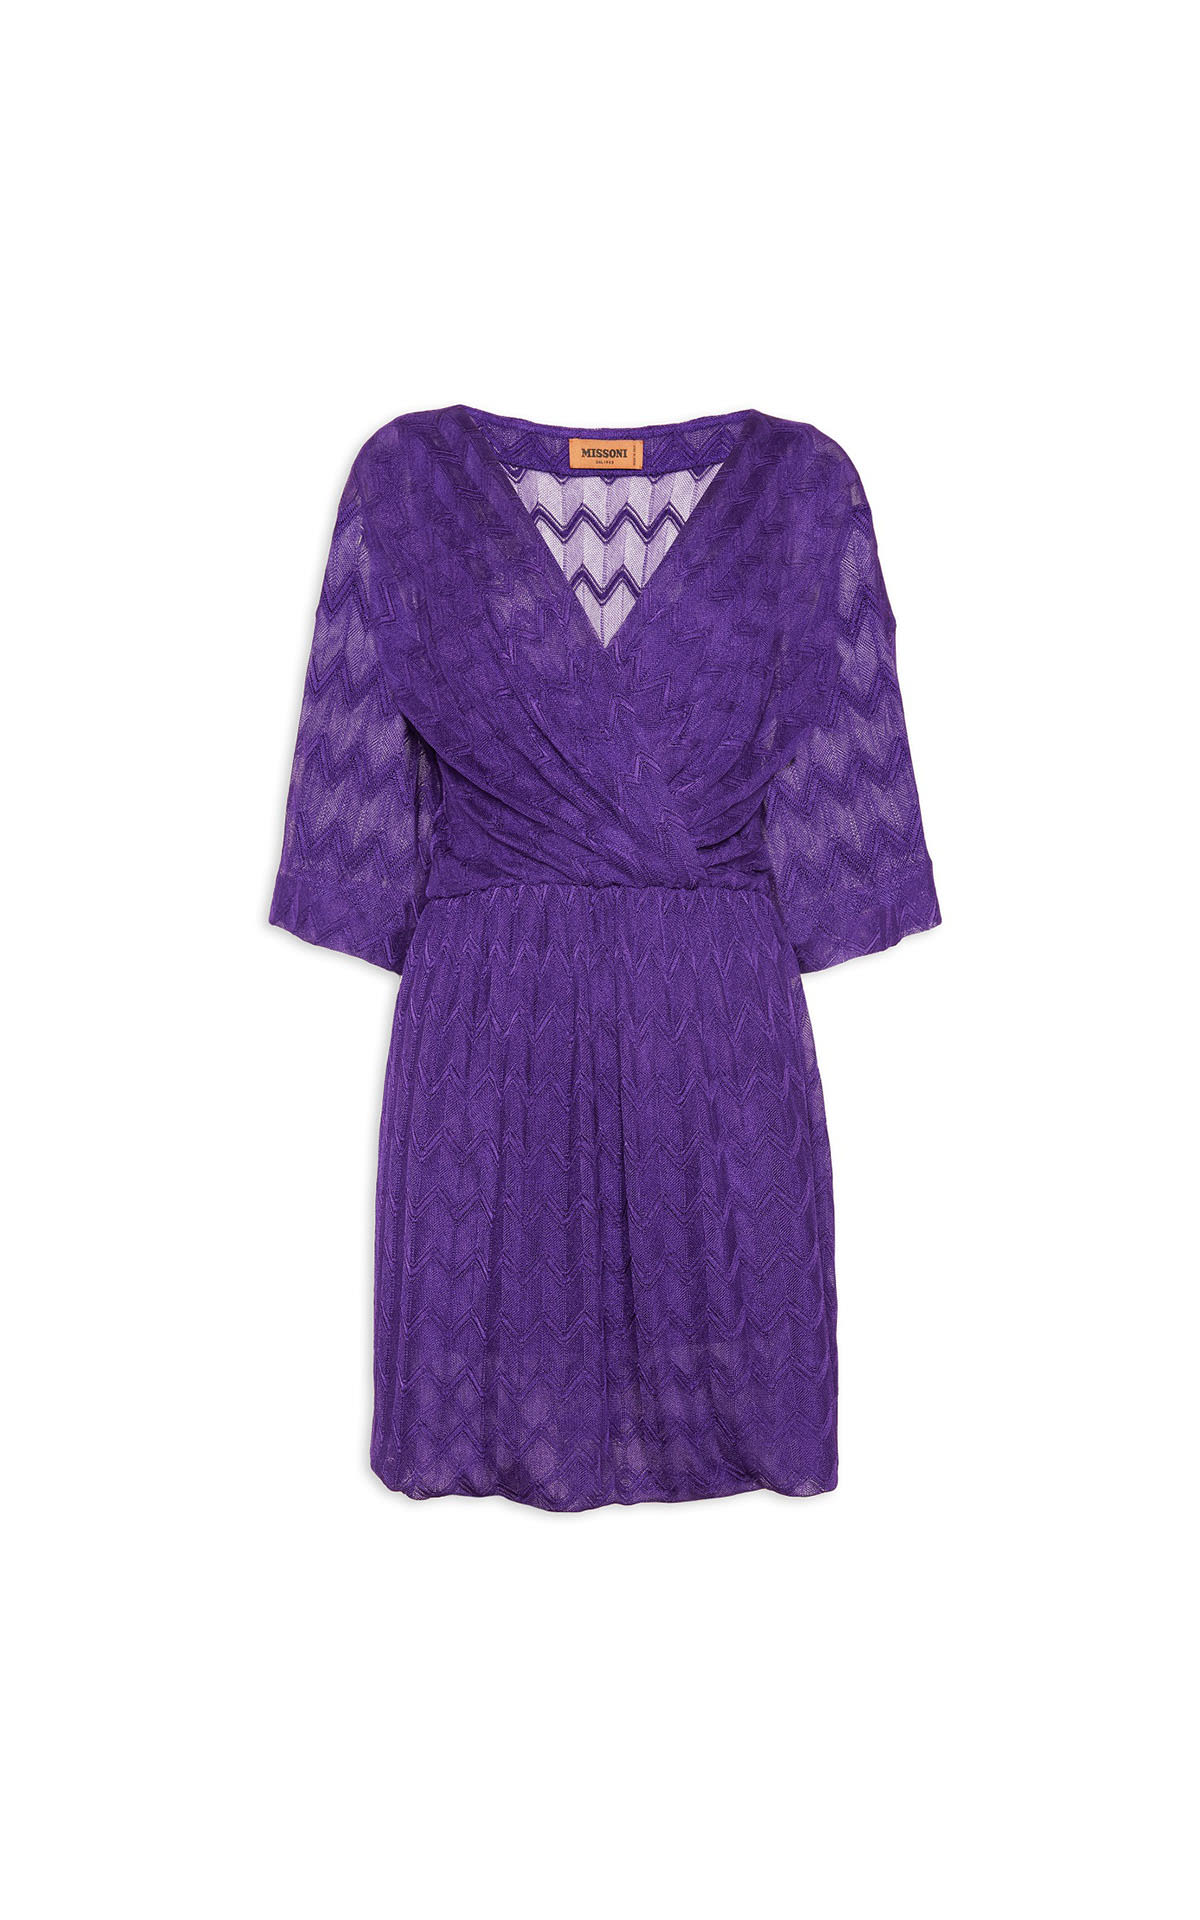 Missoni purple dress